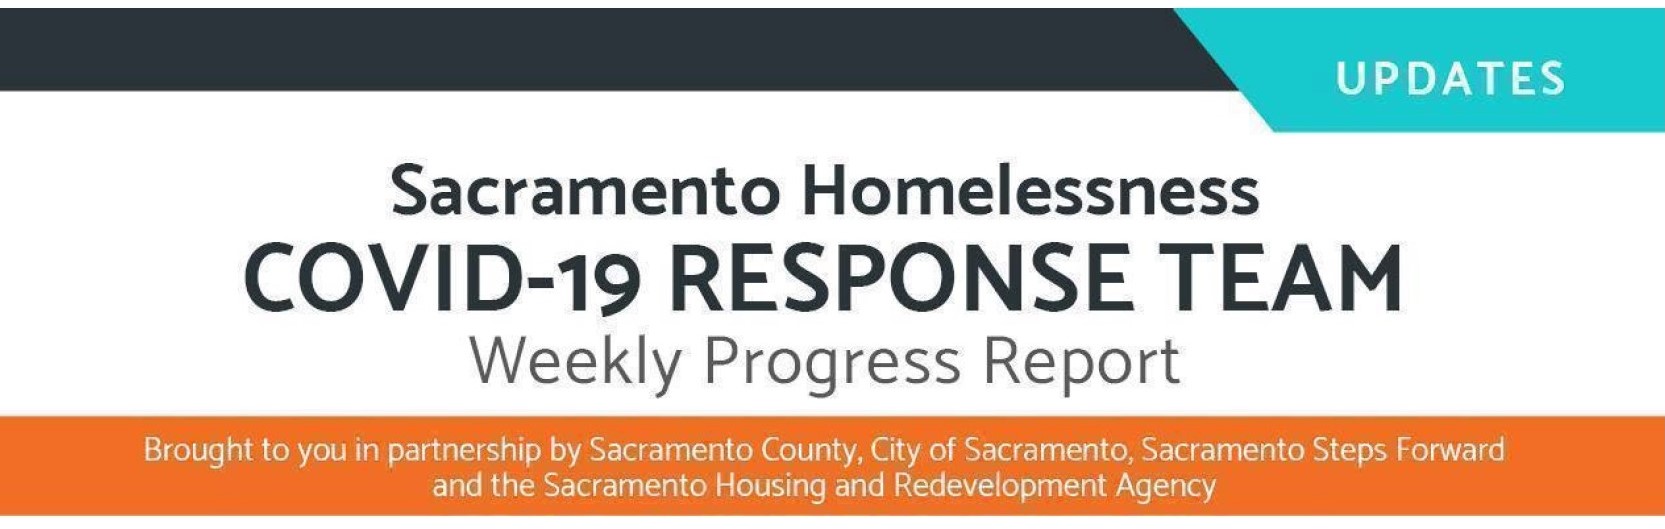 Homeless Response Team Updates banner image